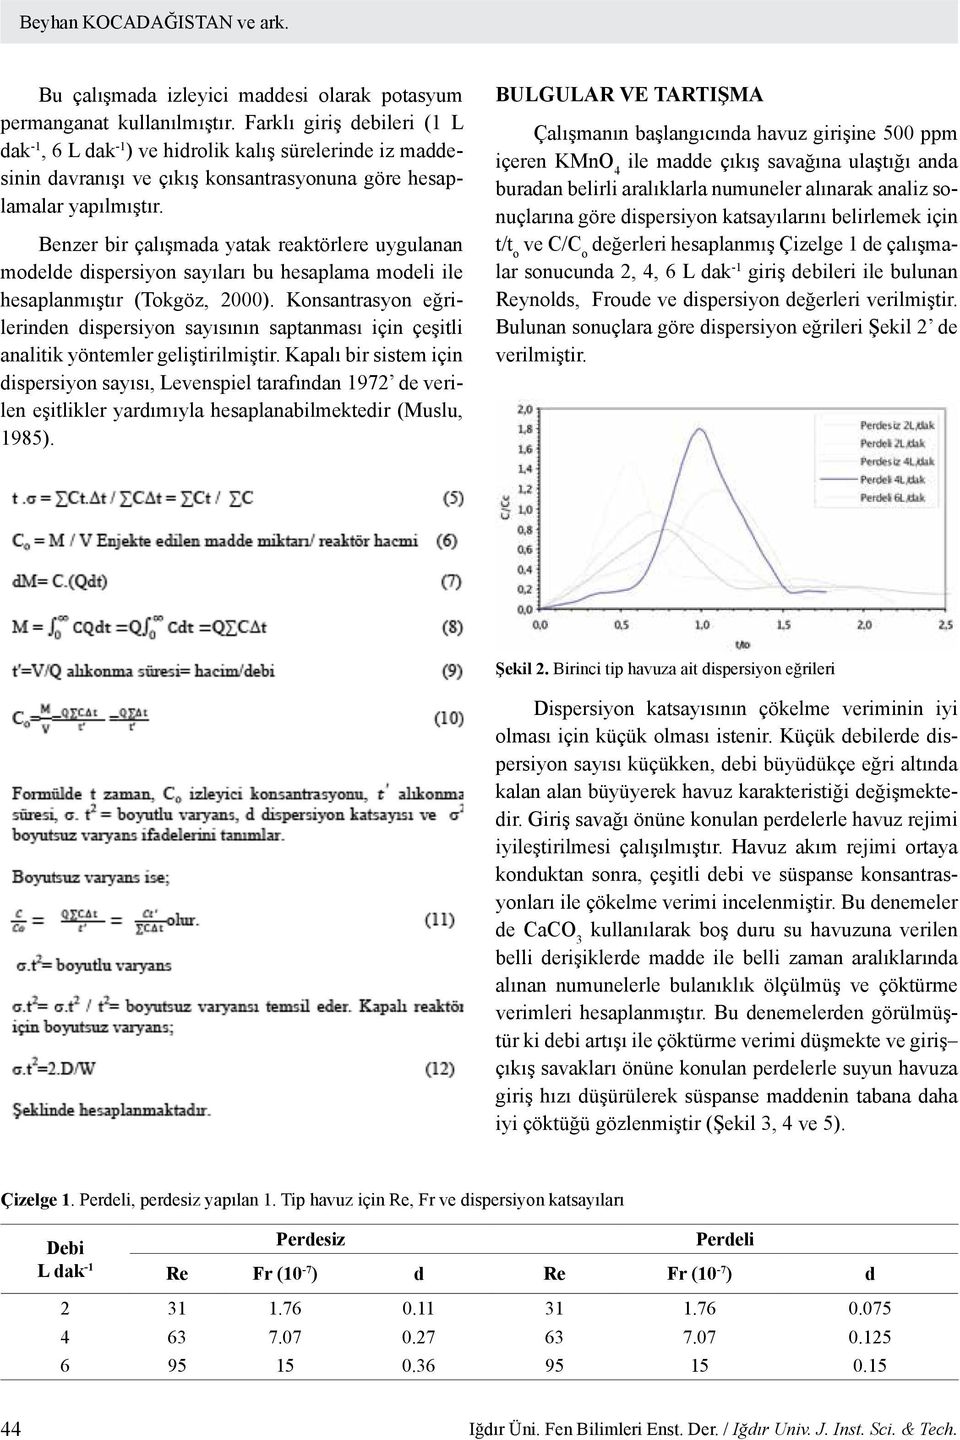 Benzer bir çalışmada yatak reaktörlere uygulanan modelde dispersiyon sayıları bu hesaplama modeli ile hesaplanmıştır (Tokgöz, 2000).